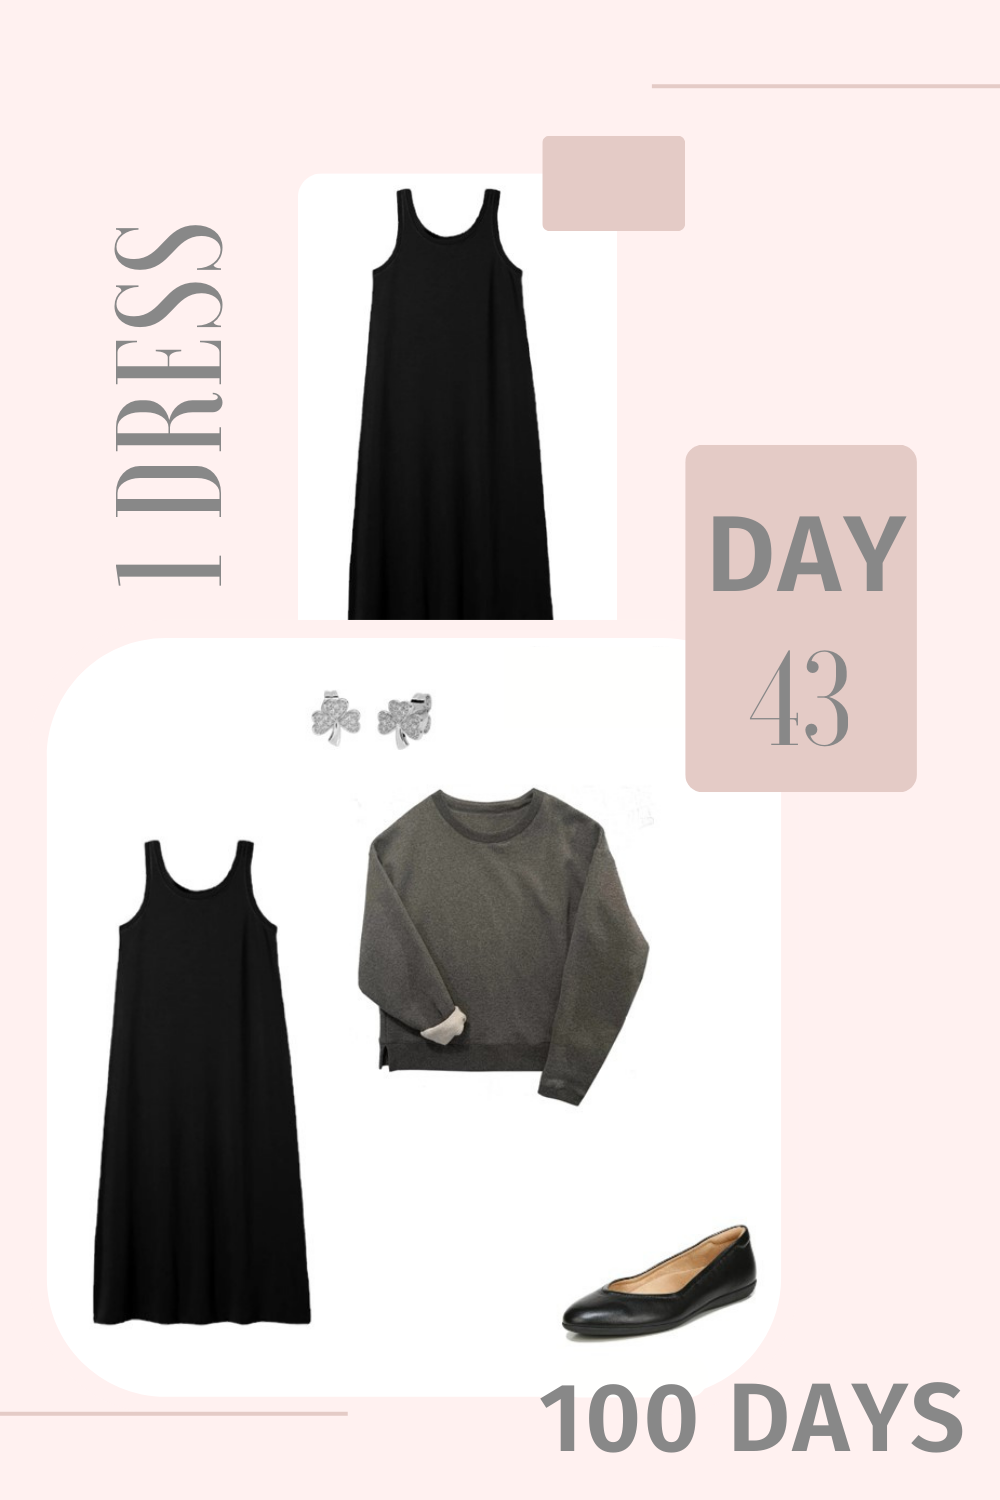 1 Dress 100 Days - Day 43